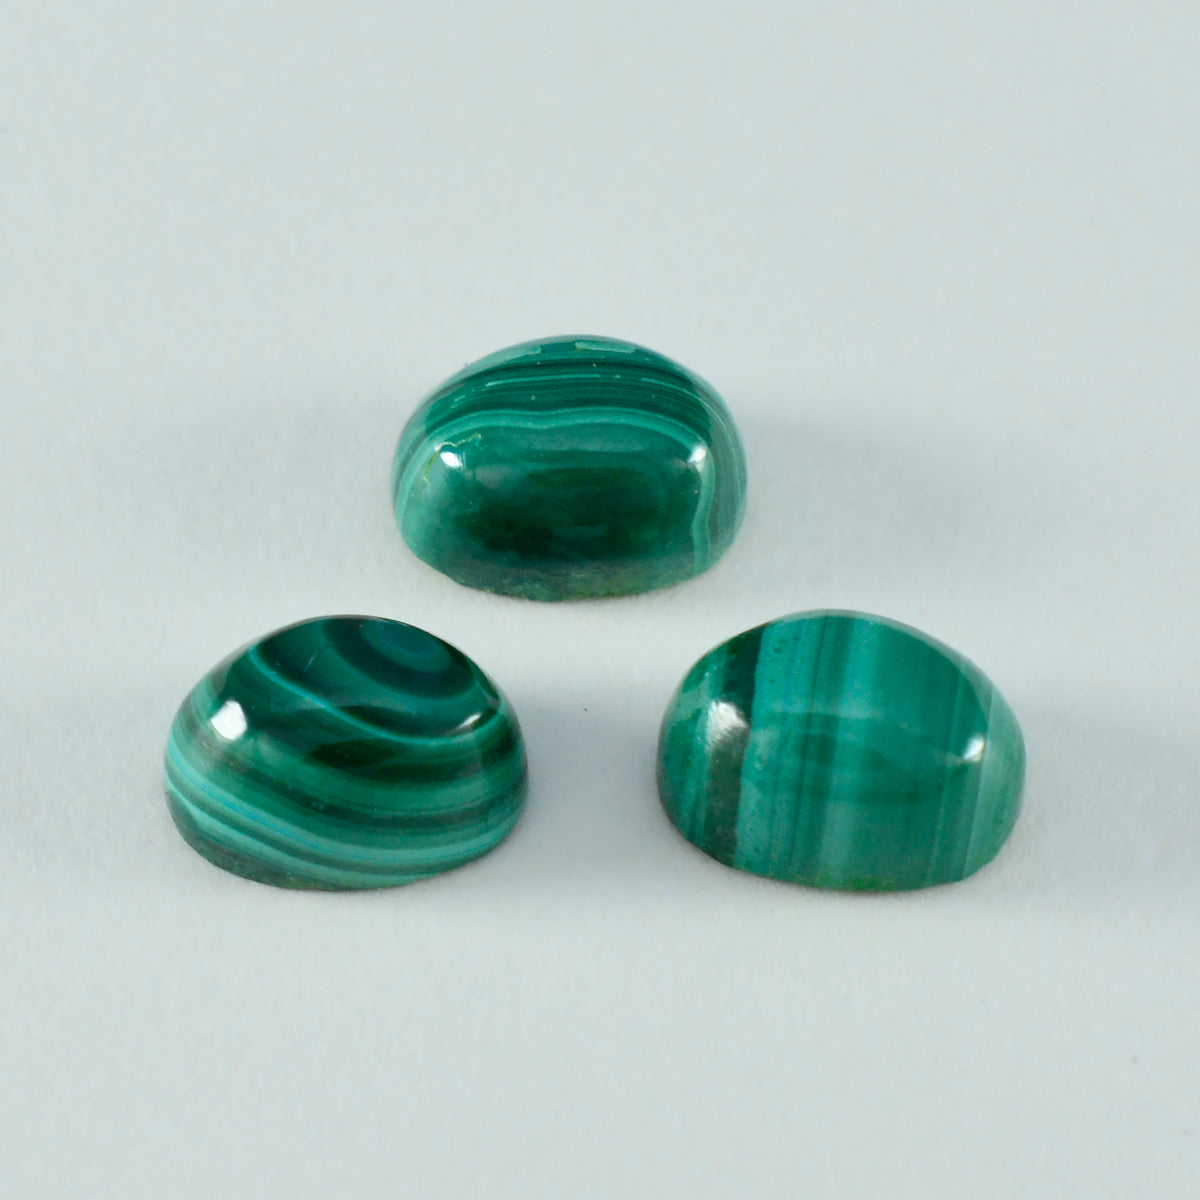 riyogems 1 pz cabochon di malachite verde 3x5 mm di forma ovale, pietra preziosa sfusa di meravigliosa qualità